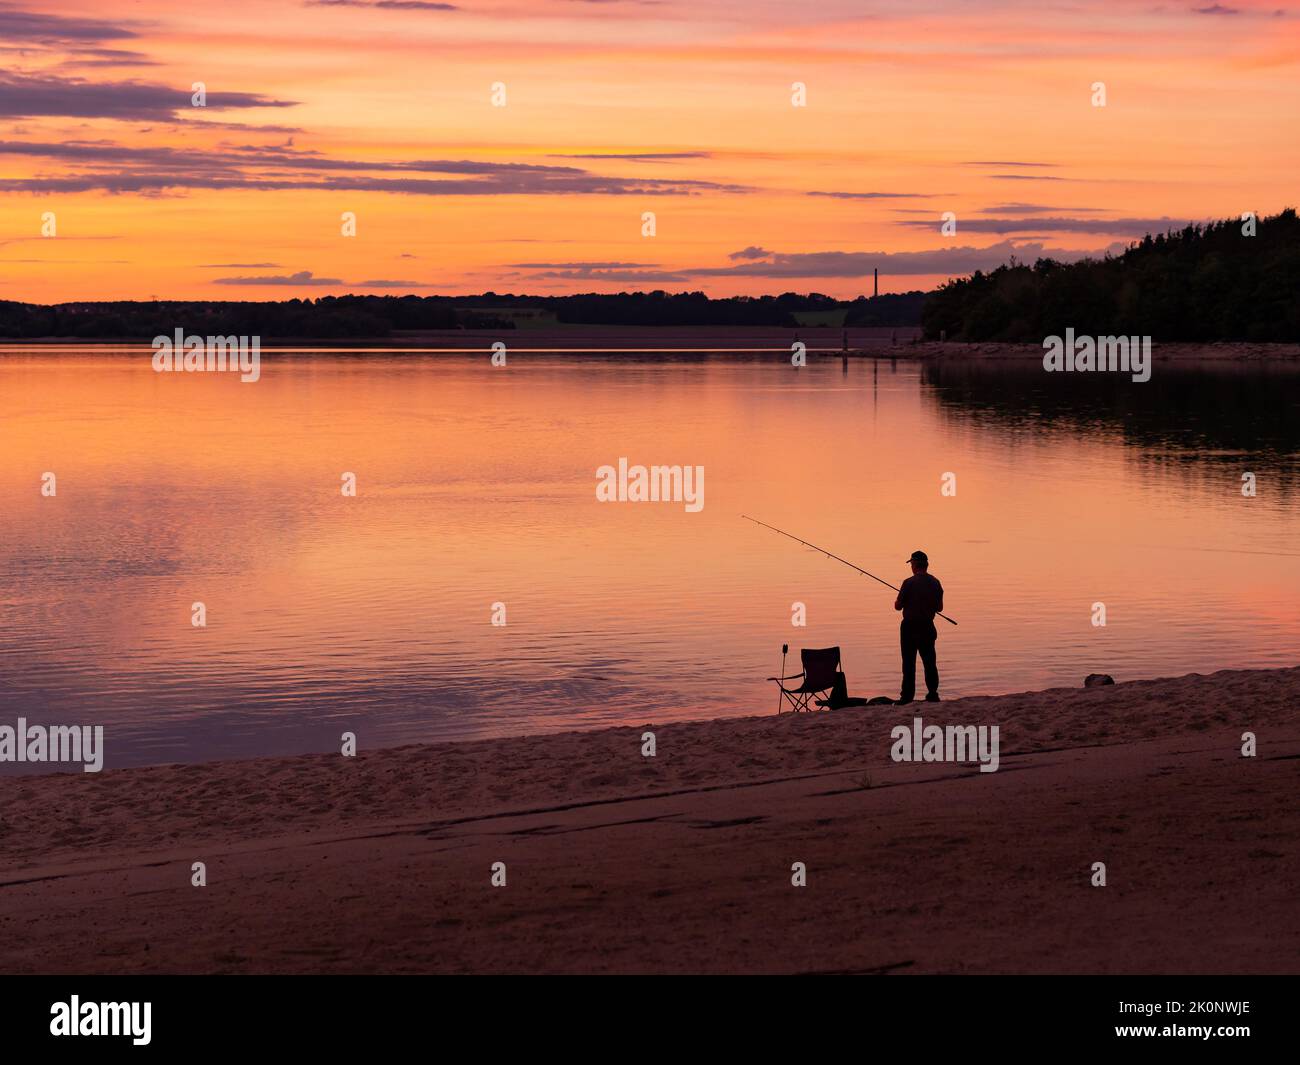 Silueta de un pescador pescando en un lago durante la puesta del sol. Un pescador al anochecer con equipo como una silla de camping. La playa de arena es visible. Foto de stock